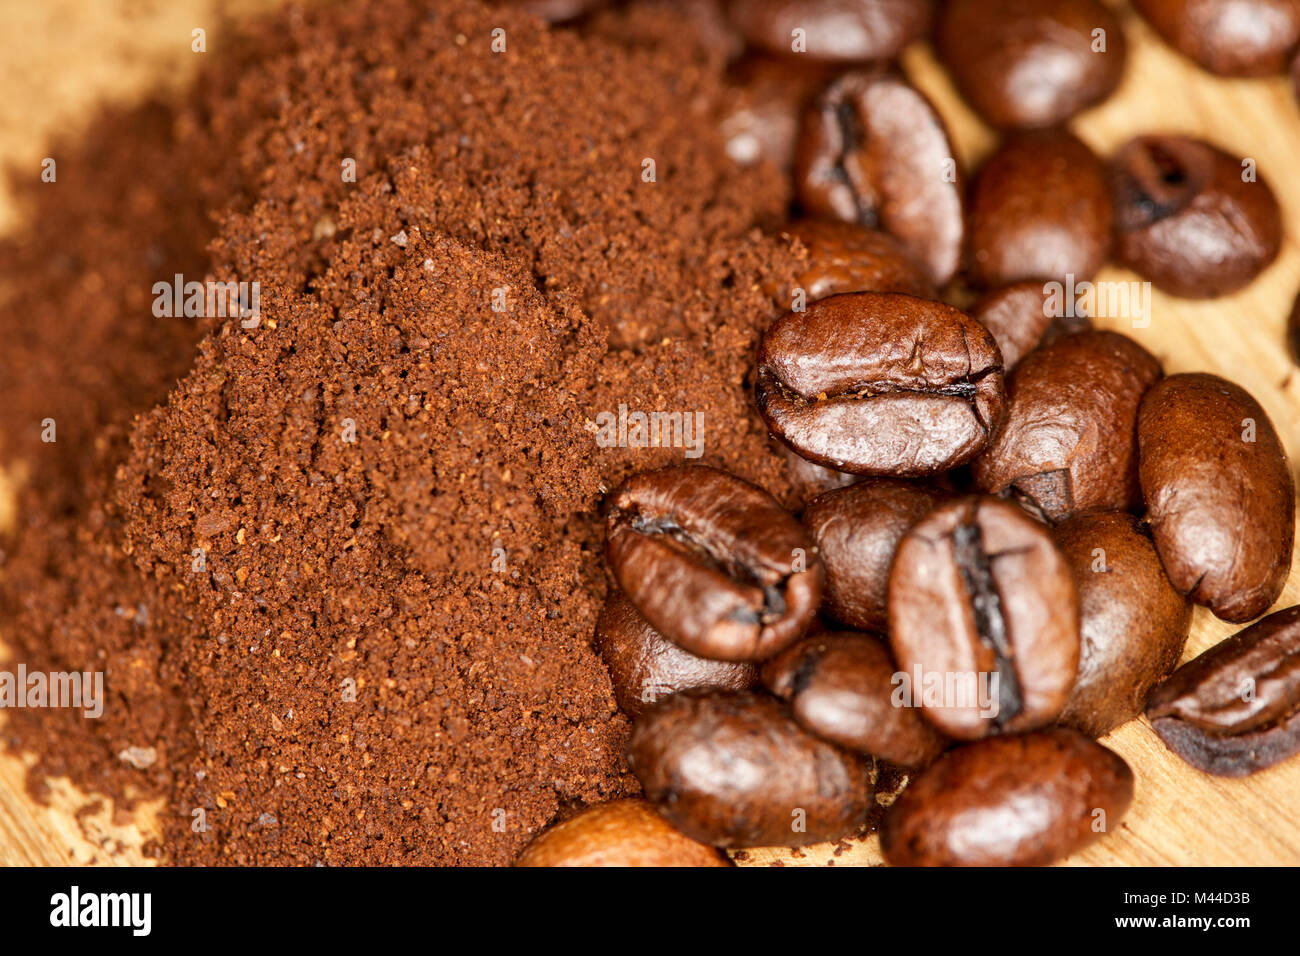 Macinatura grossolana caffè appena macinato con un mix di arabica e robusta i chicchi di caffè Foto Stock